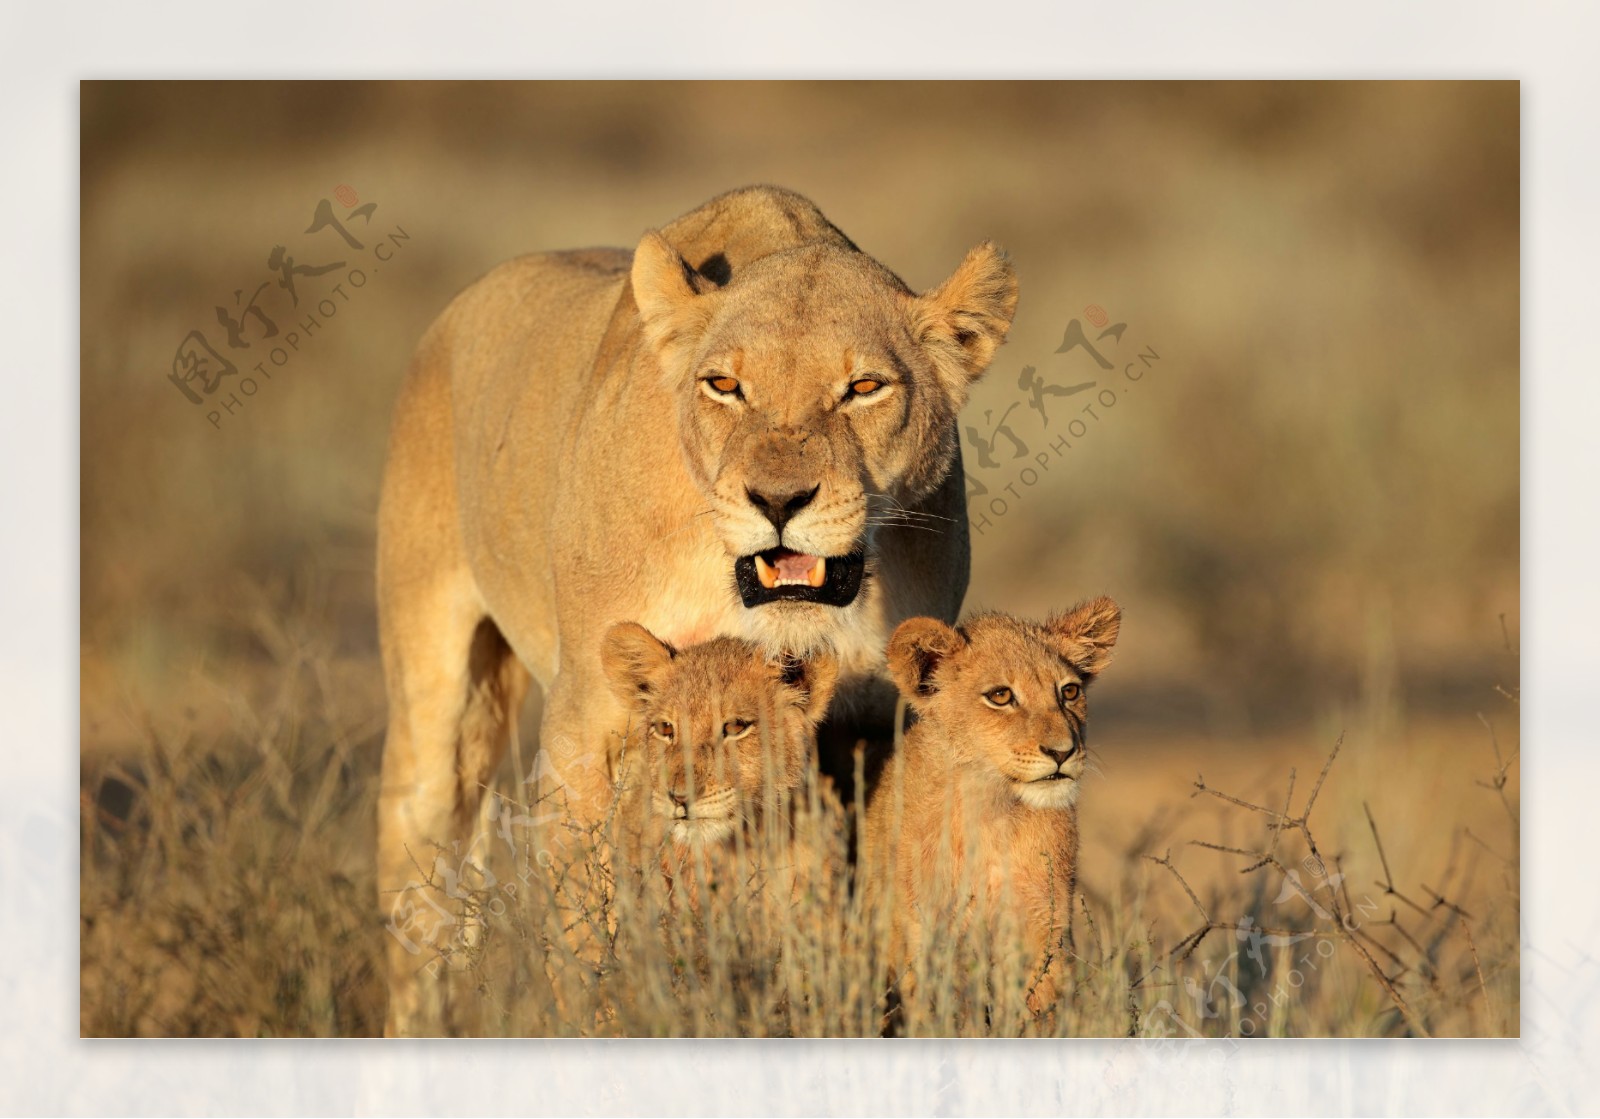 母狮子和小狮子图片